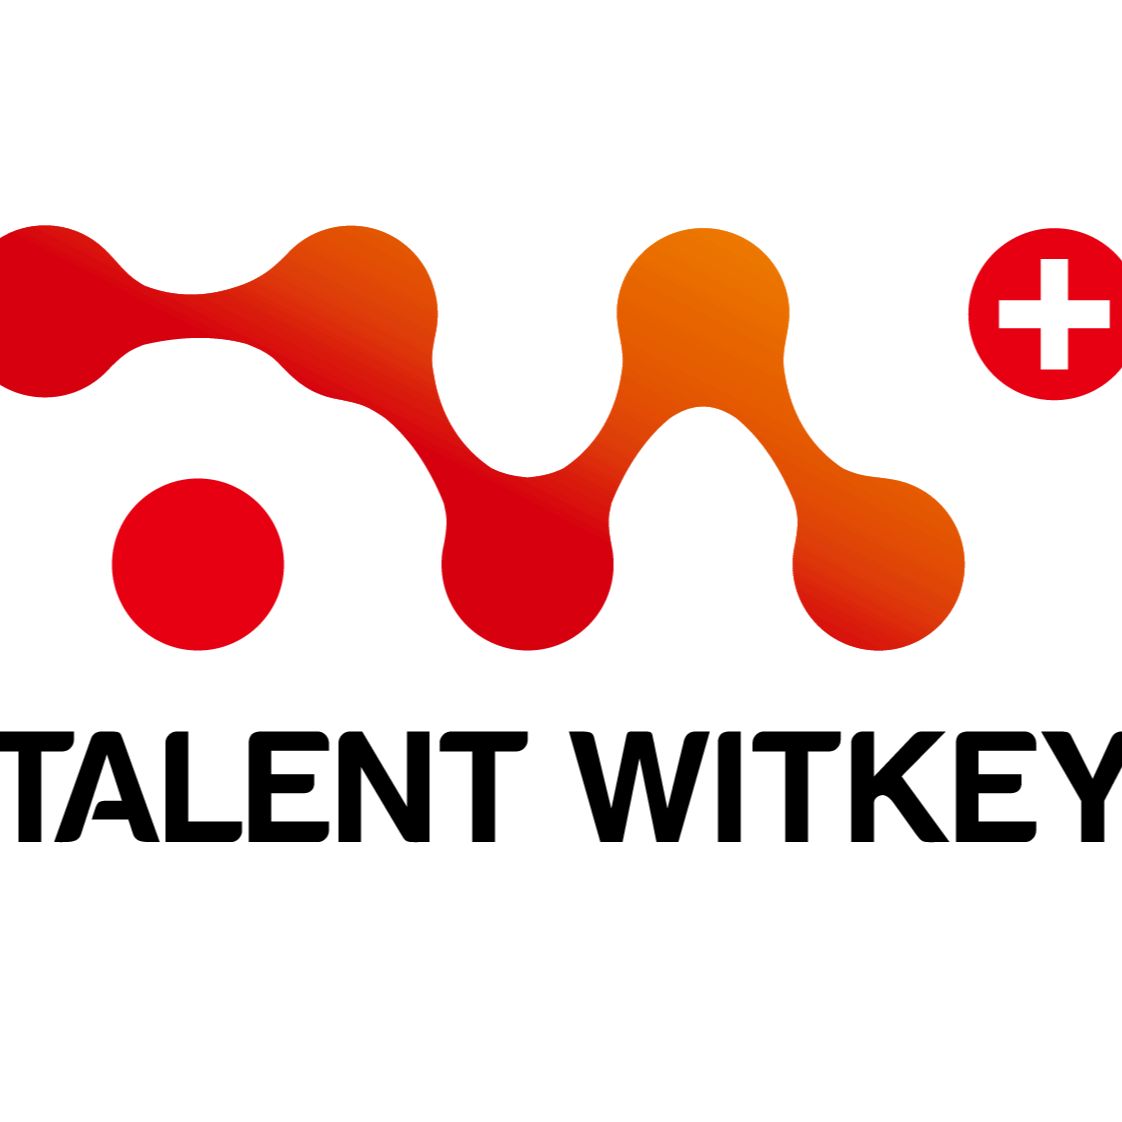 Talent Witkey Logo